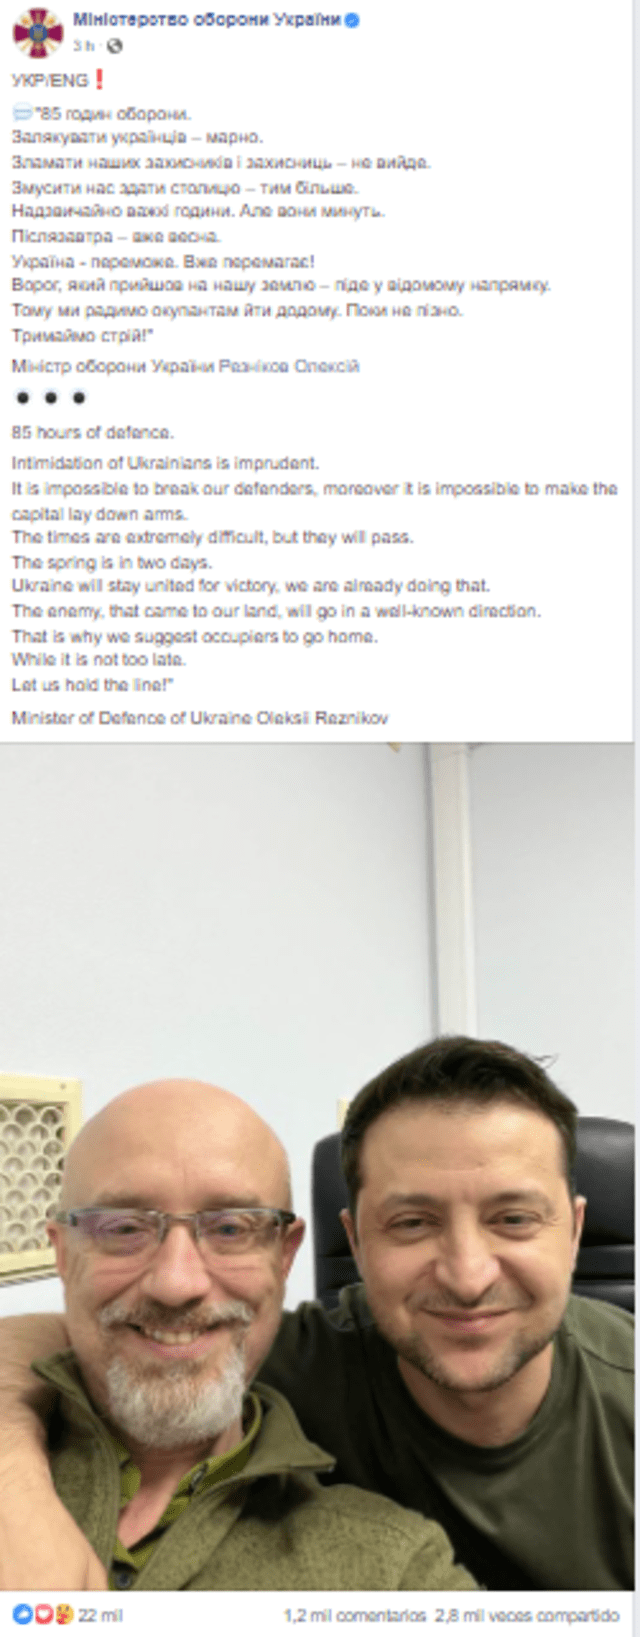 Zelenski publicó una foto con una descripción a través del Ministerio de Defensa de su país. Foto: Ministerio de Defensa/Facebook